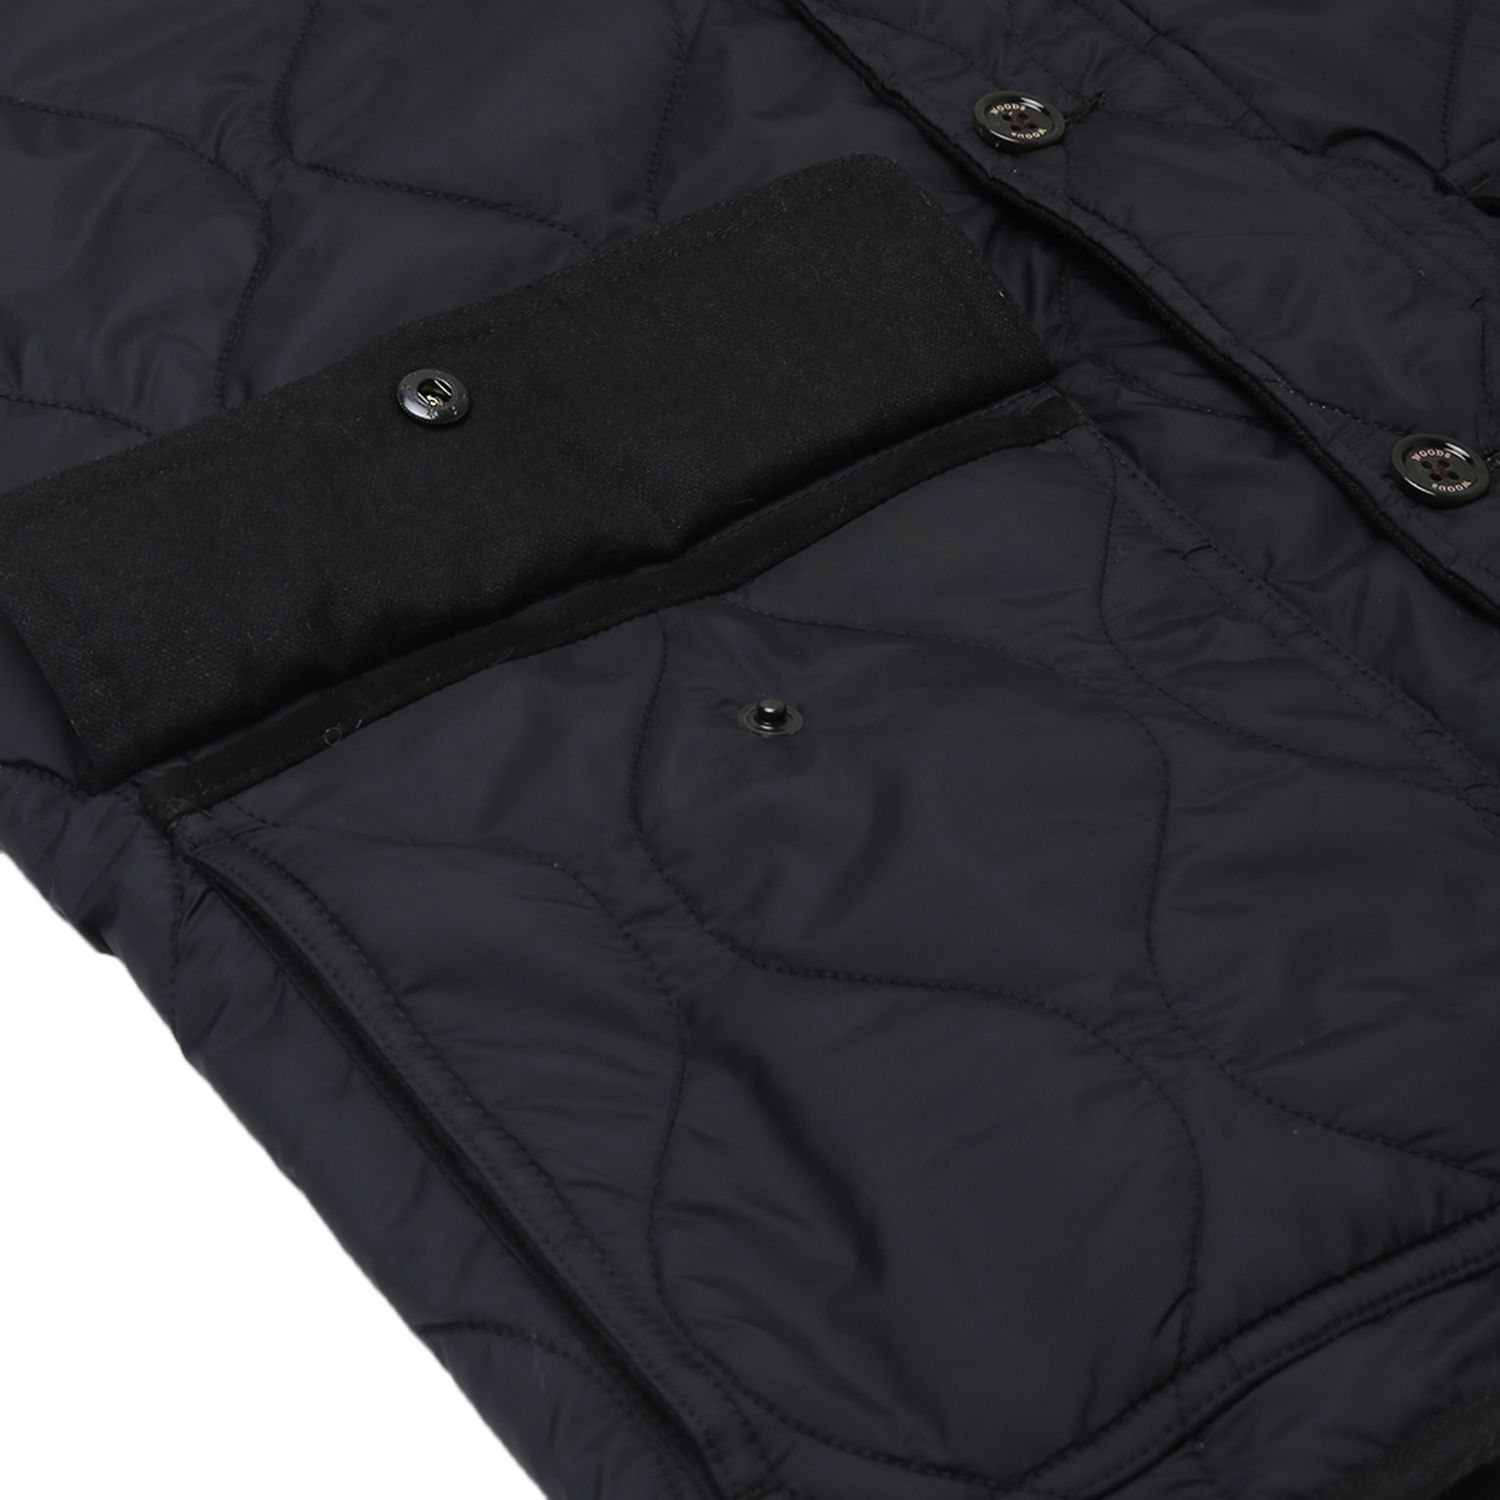 Black Sleeveless jacket for men